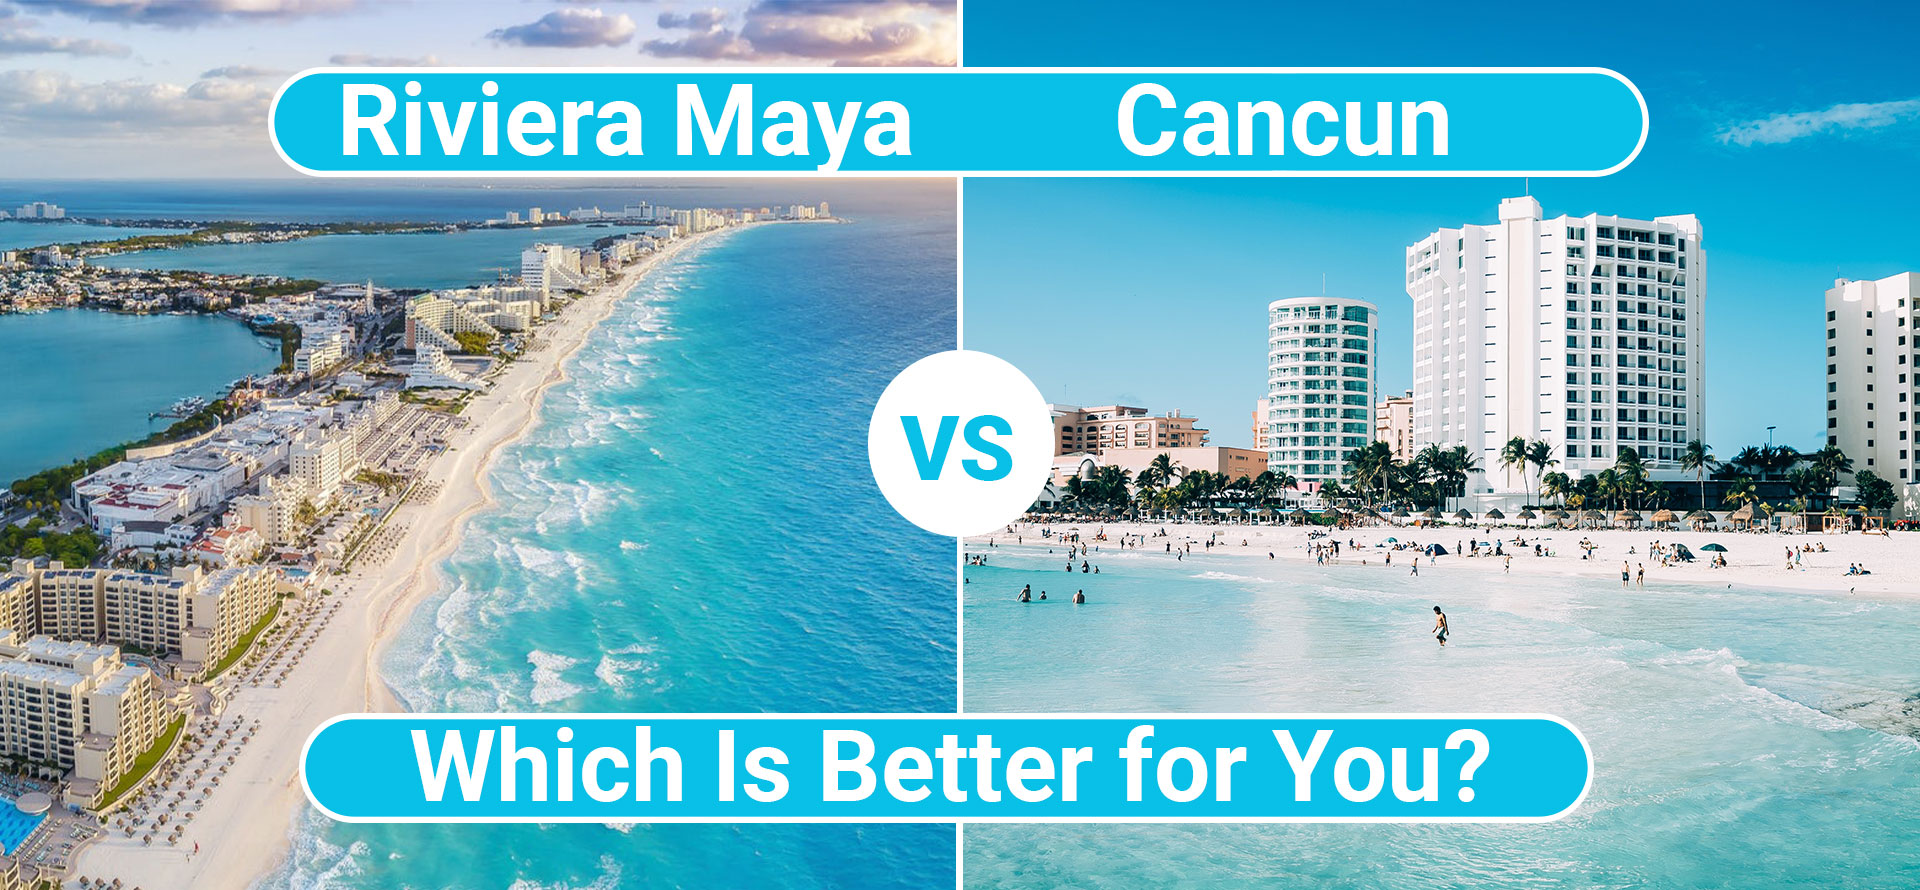 Riviera maya vs cancun.